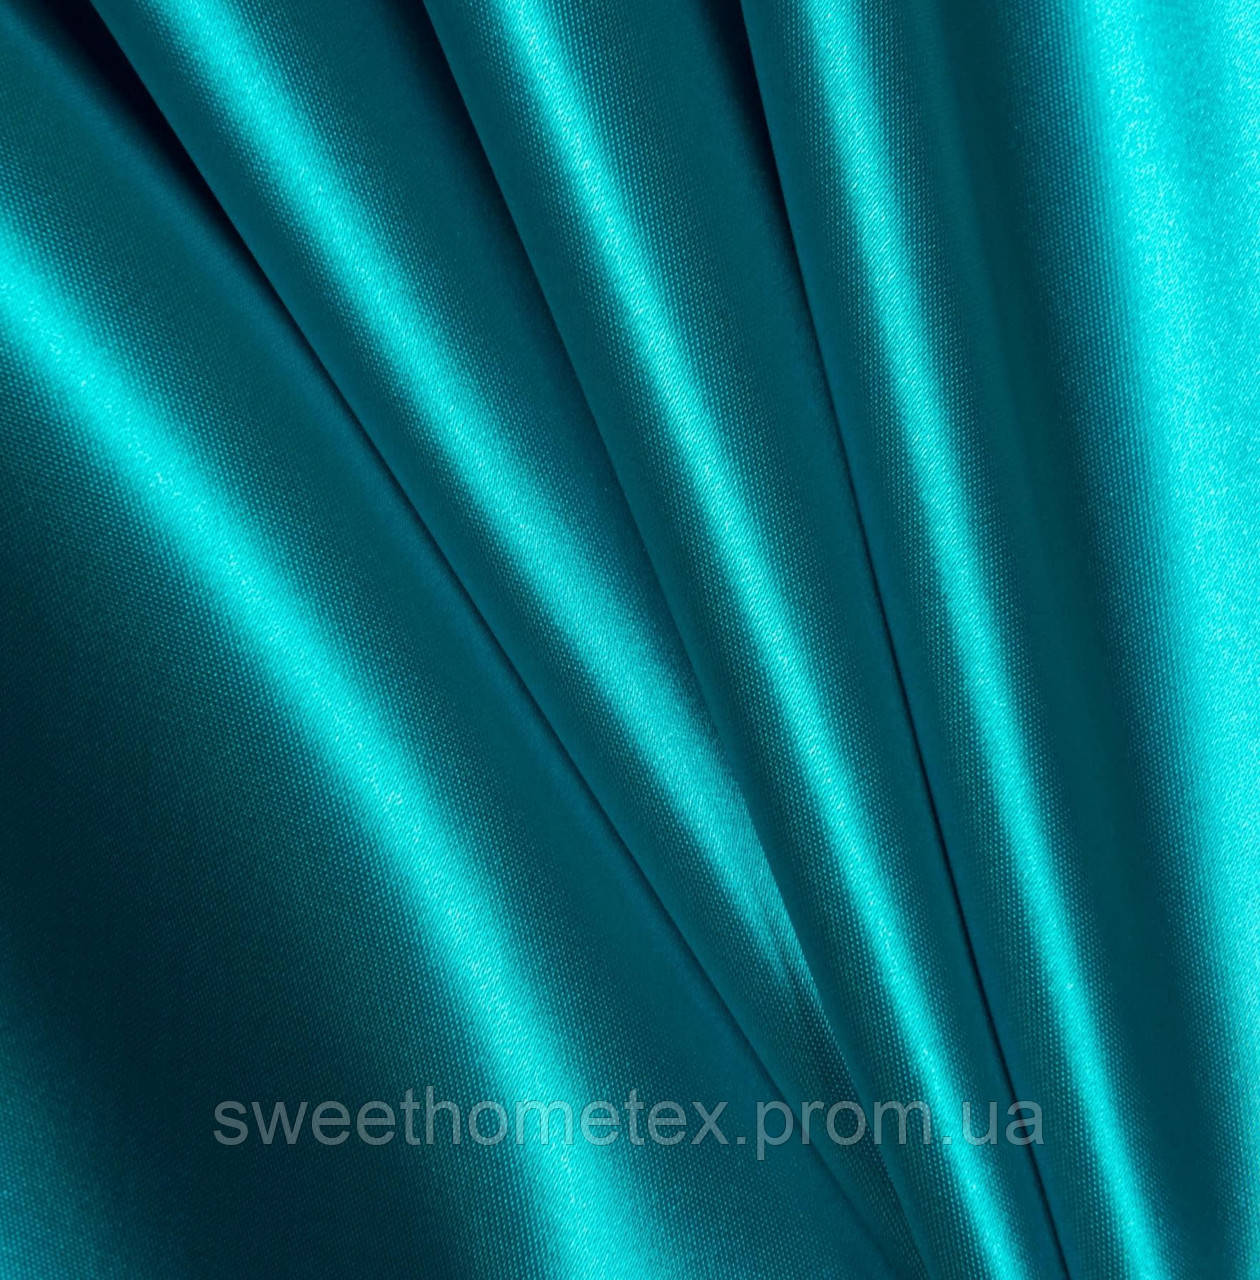 Тканина атлас щільний для платтів блузок костюмів скатертин темно-бірюзова